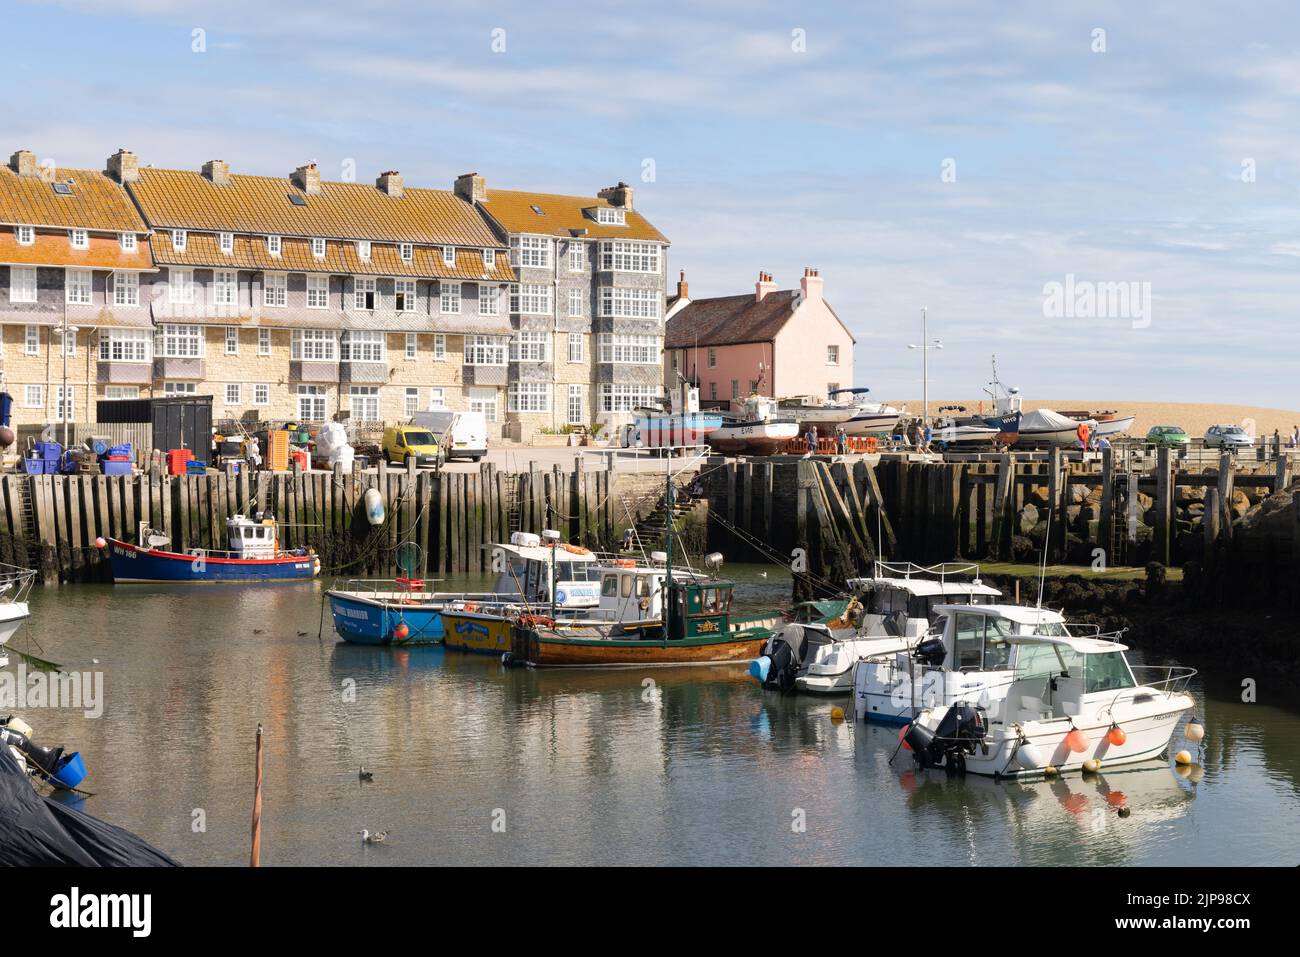 Bridport Harbour, West Bay, Dorset UK, un jour d'été ensoleillé, Dorset Coast UK Banque D'Images